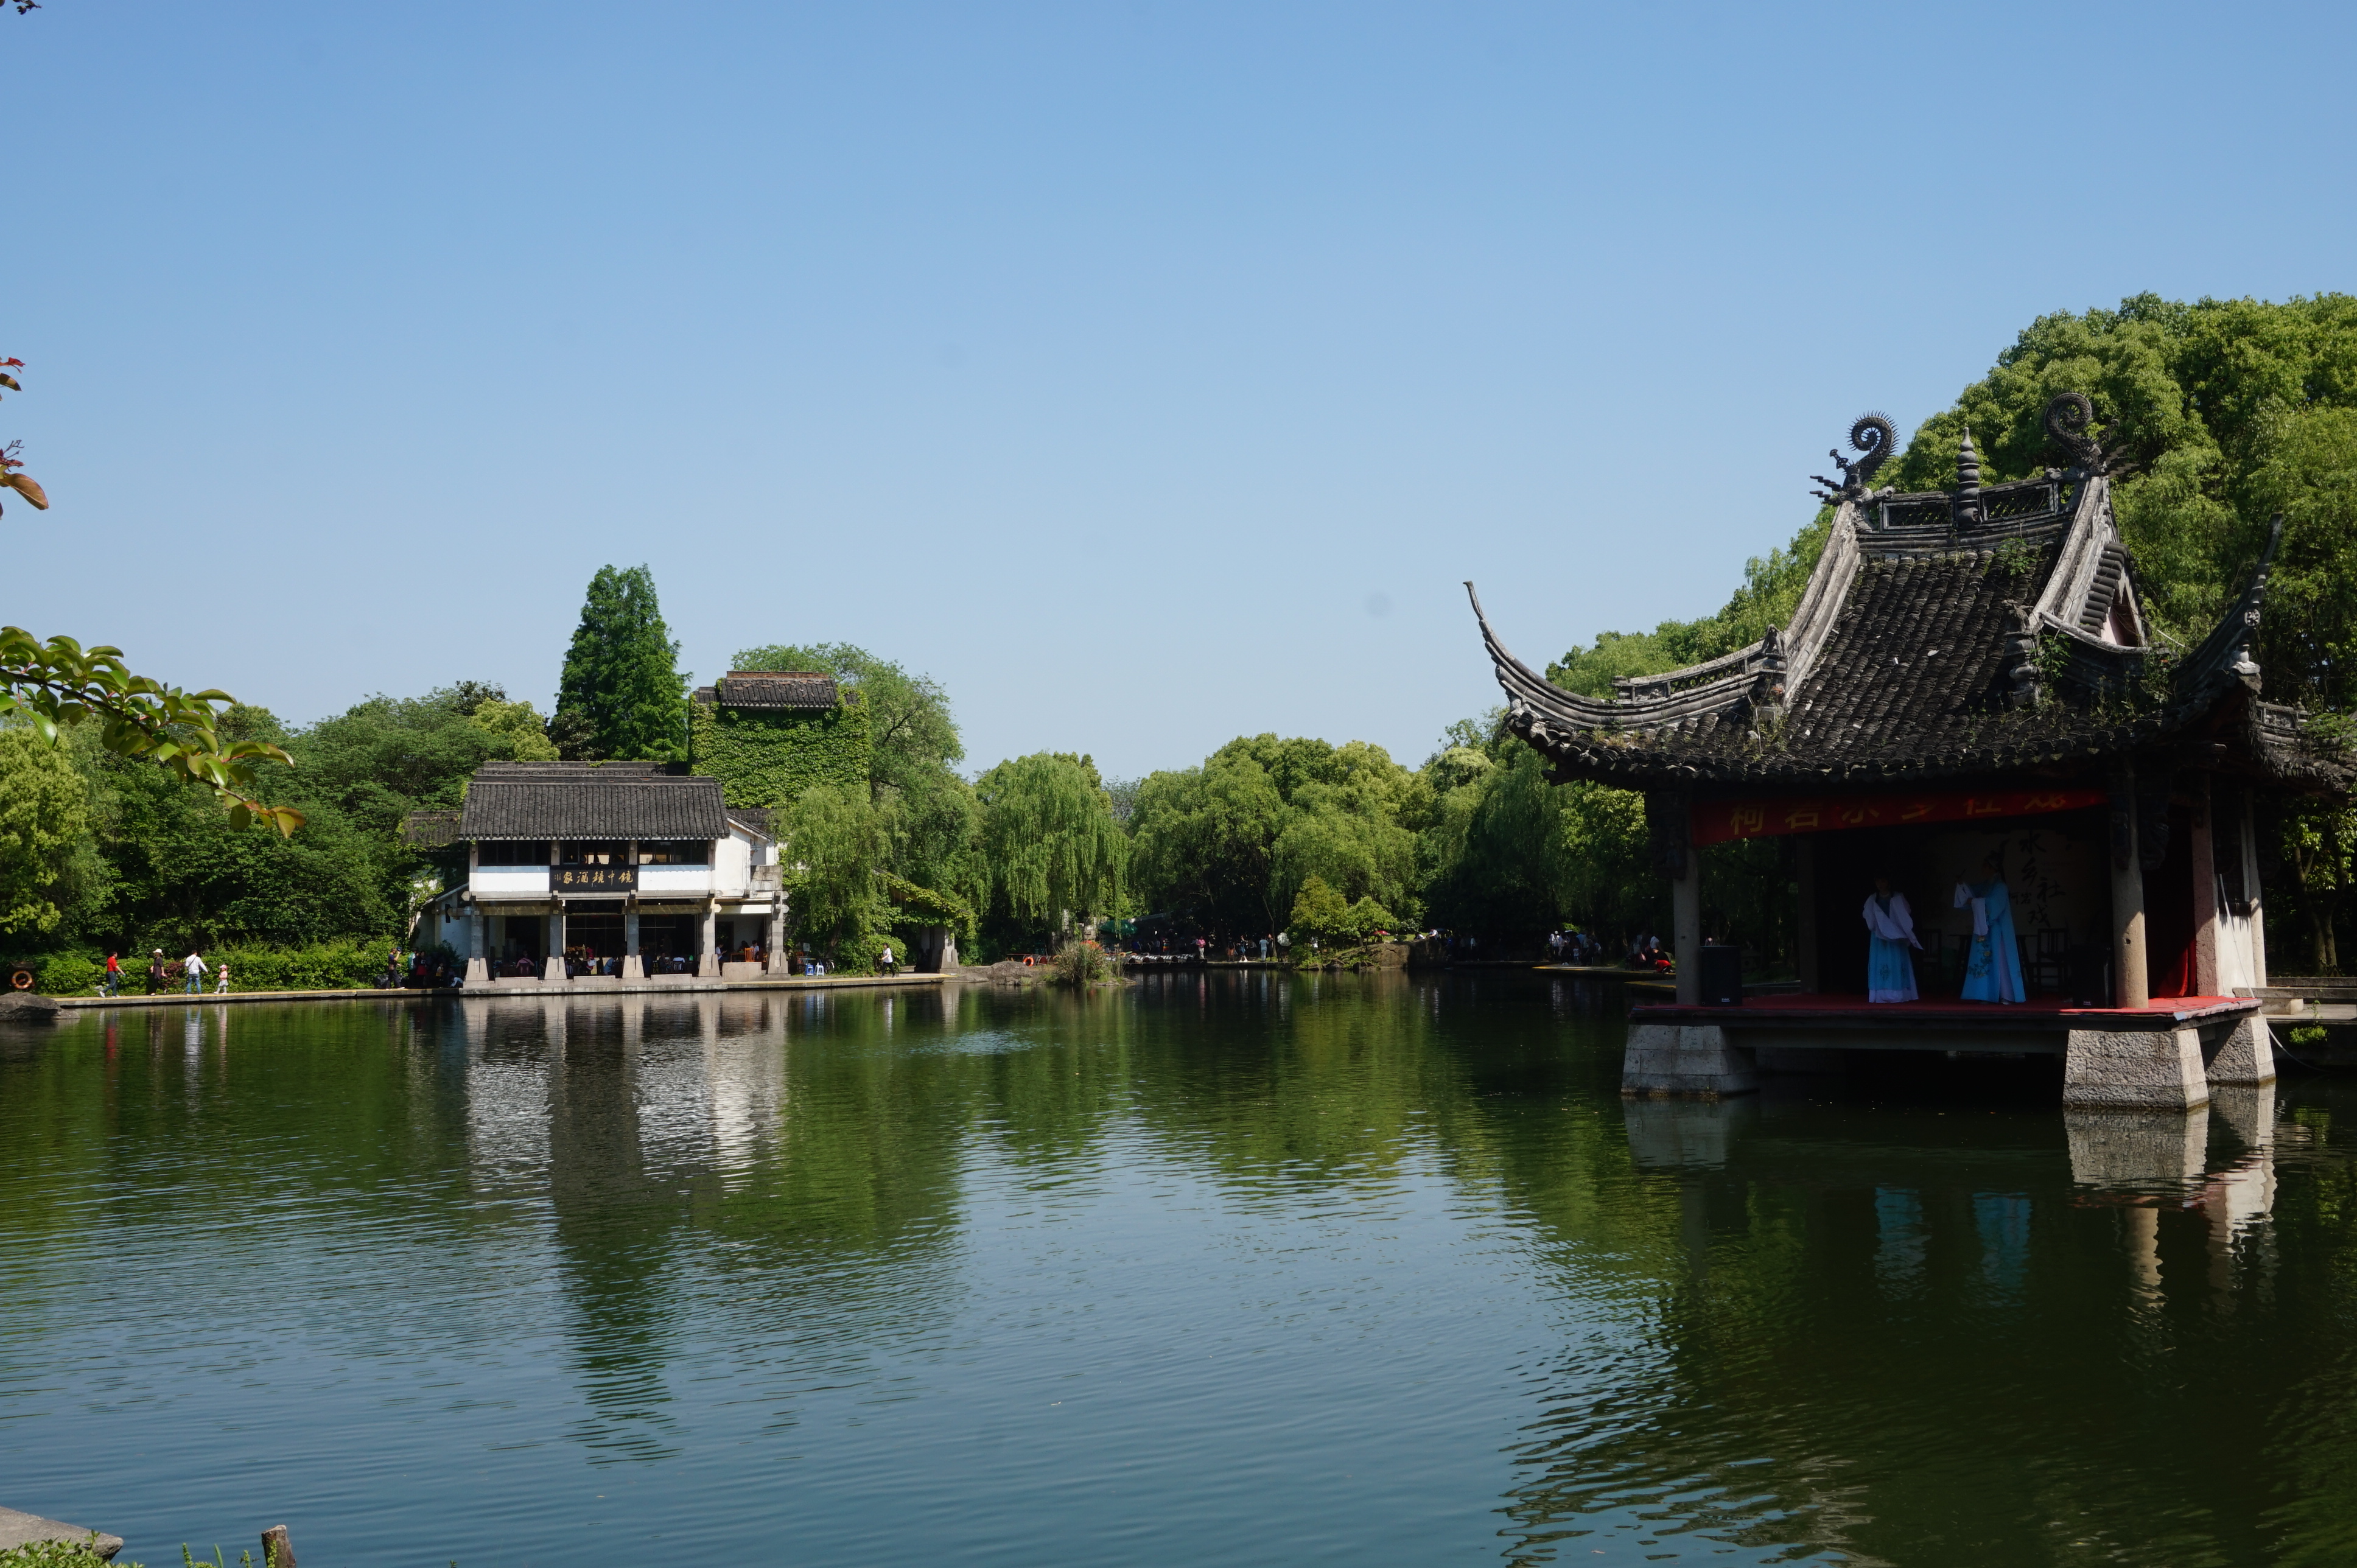 绍兴最为一座历史悠久的江南古城,文物古迹众多,你最喜欢哪个文化景点